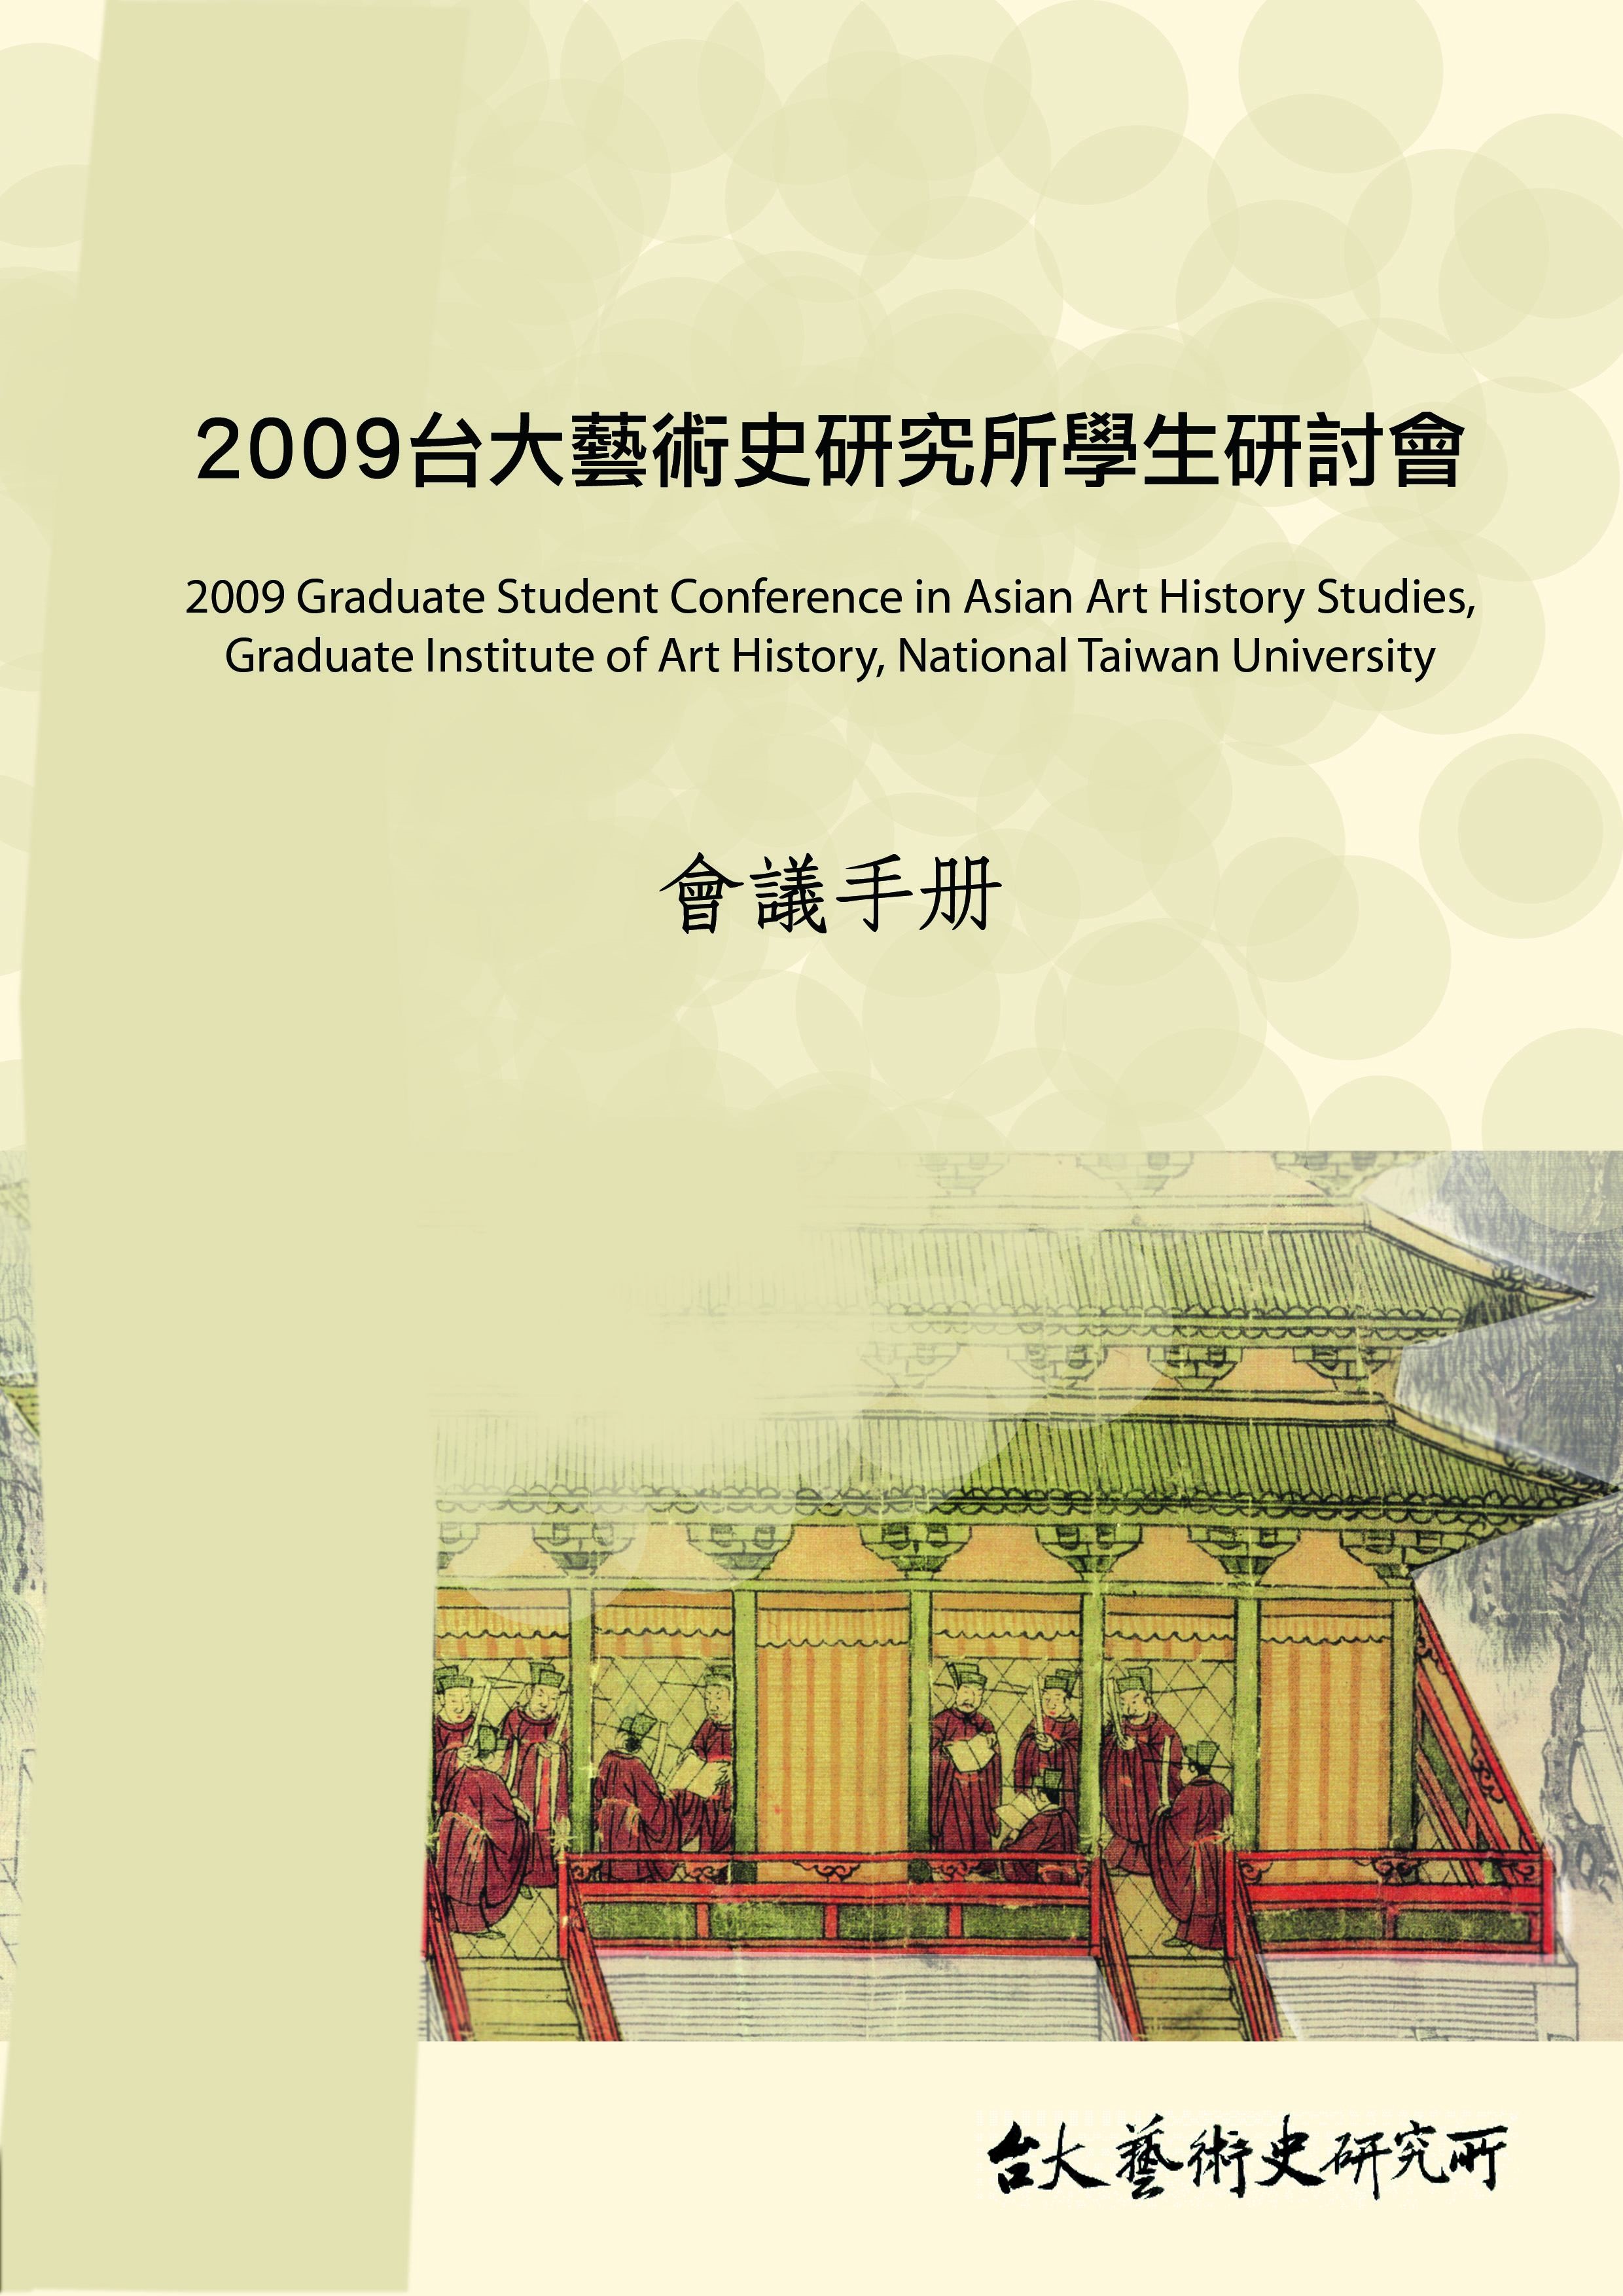 2009年國立臺灣大學藝術史研究所學生研討會海報